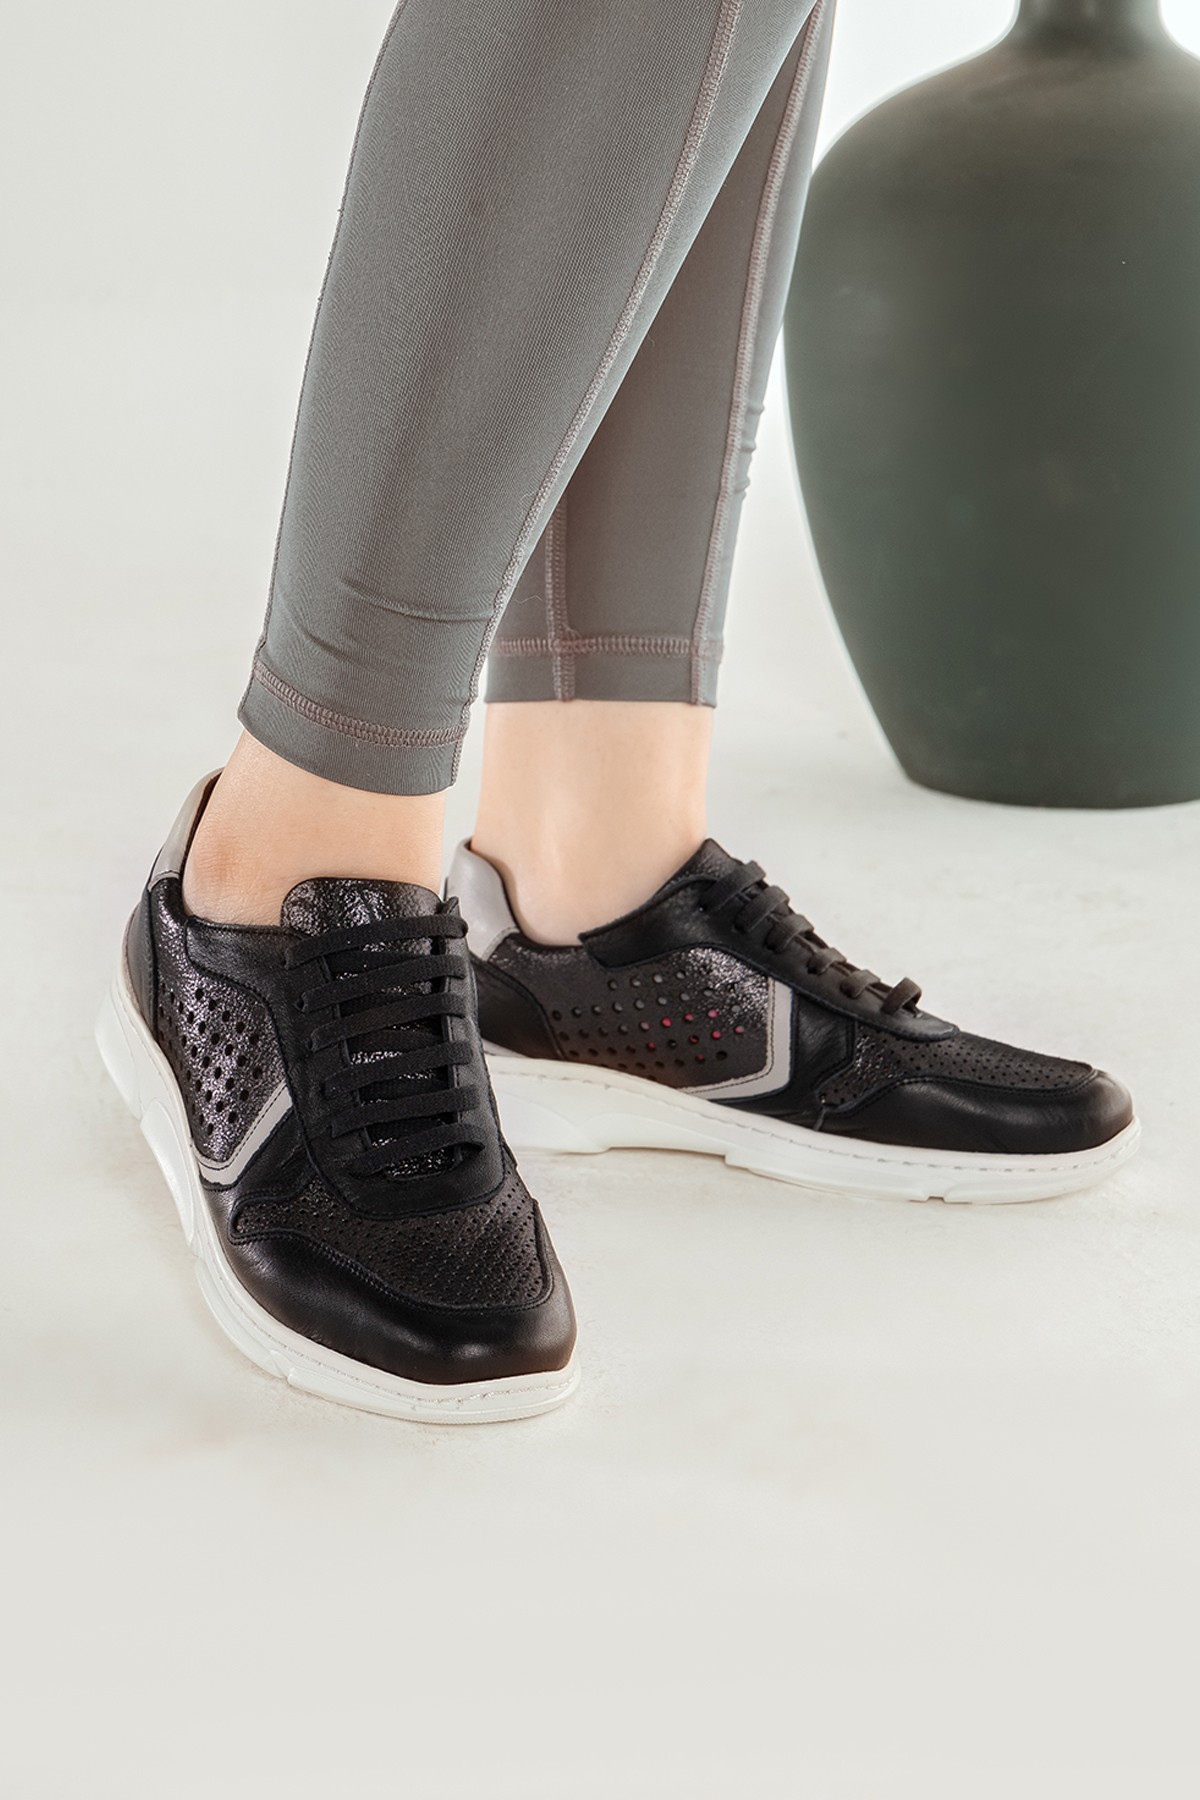 Cooliza Hakiki Deri Bağcıklı Günlük Rahat Kadın Yürüyüş Spor Ayakkabı - Siyah